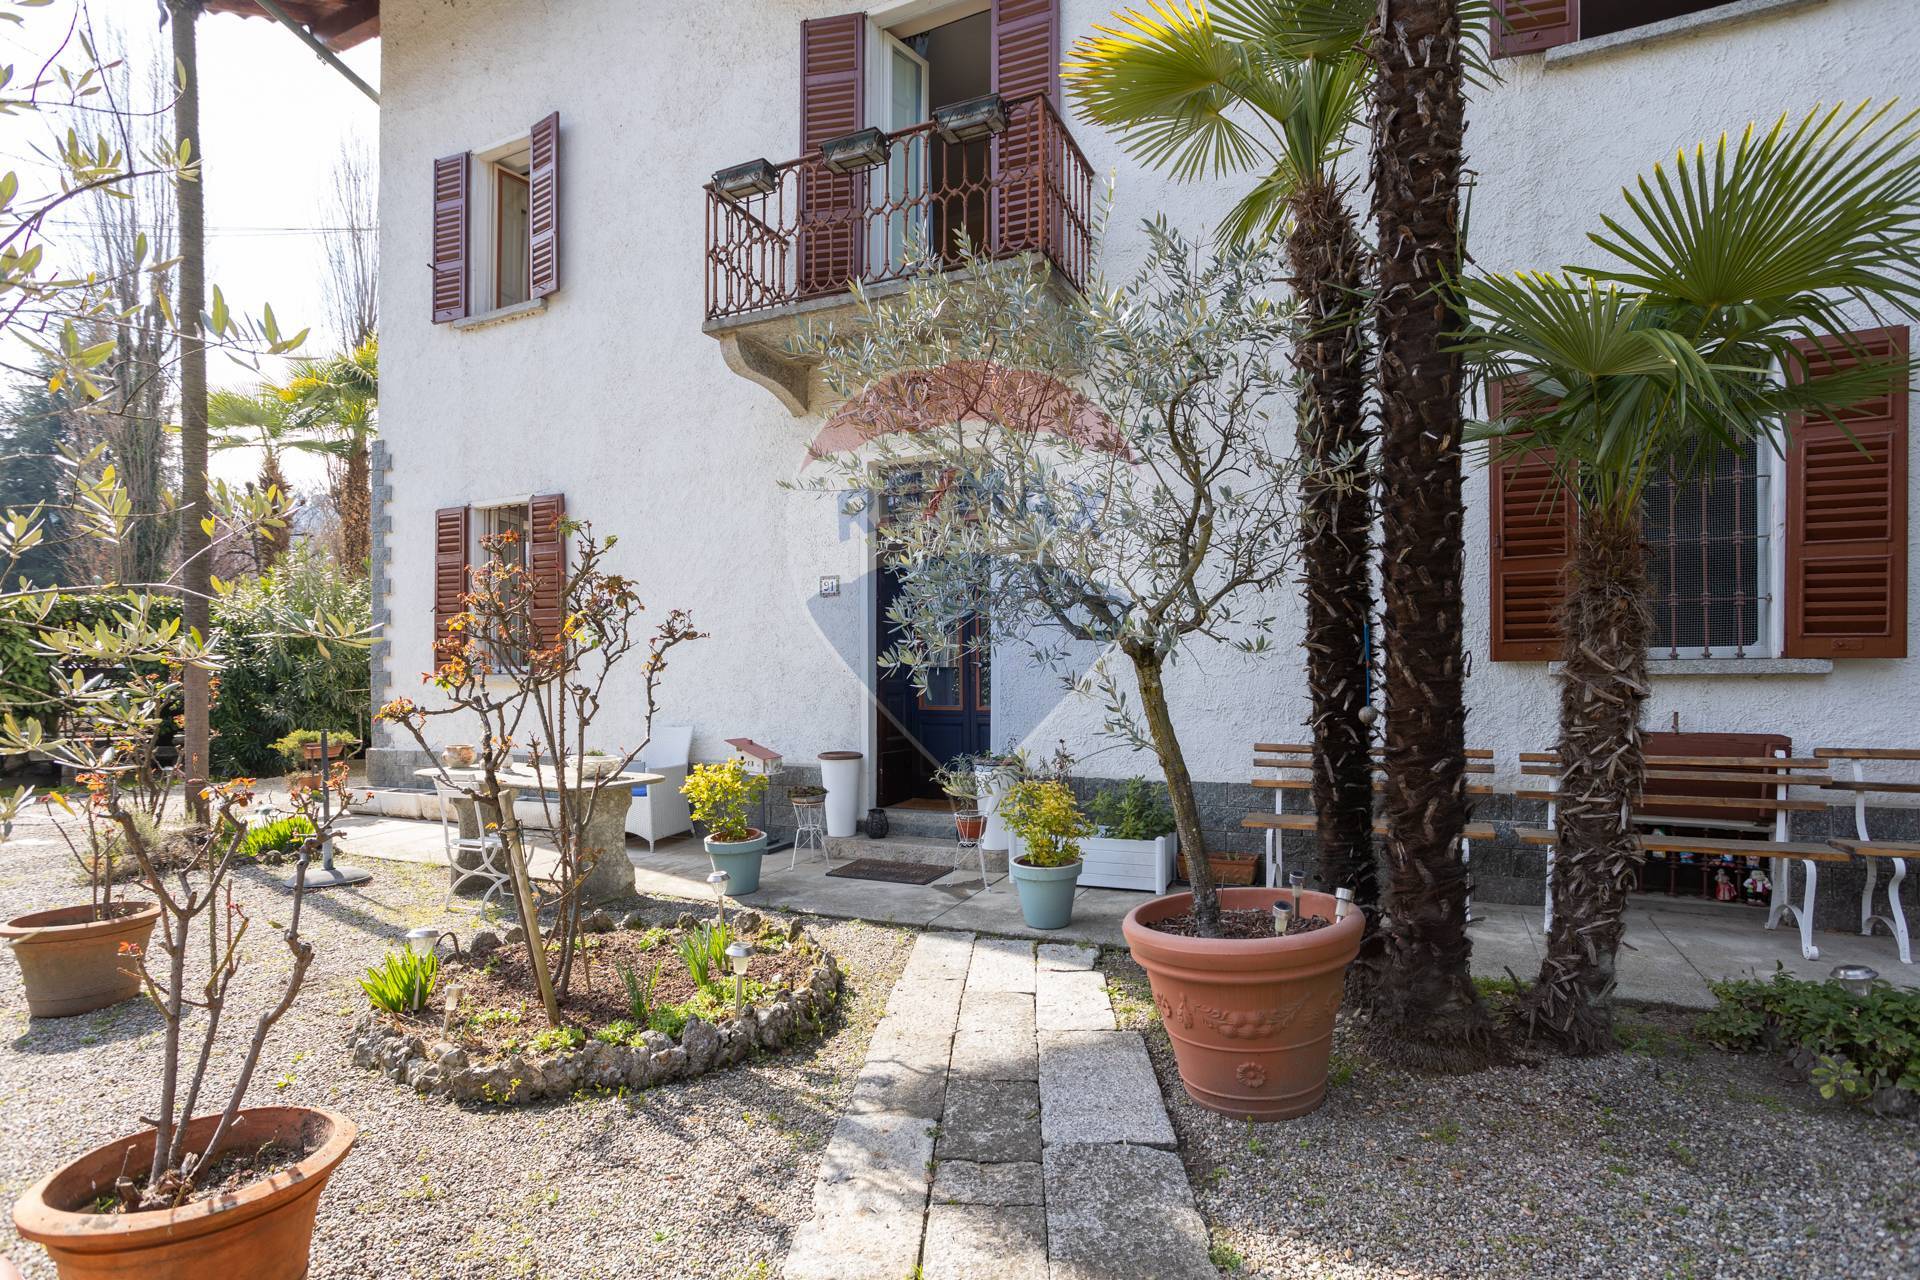 Villa Bifamiliare in affitto a Meina, 6 locali, prezzo € 1.800 | CambioCasa.it